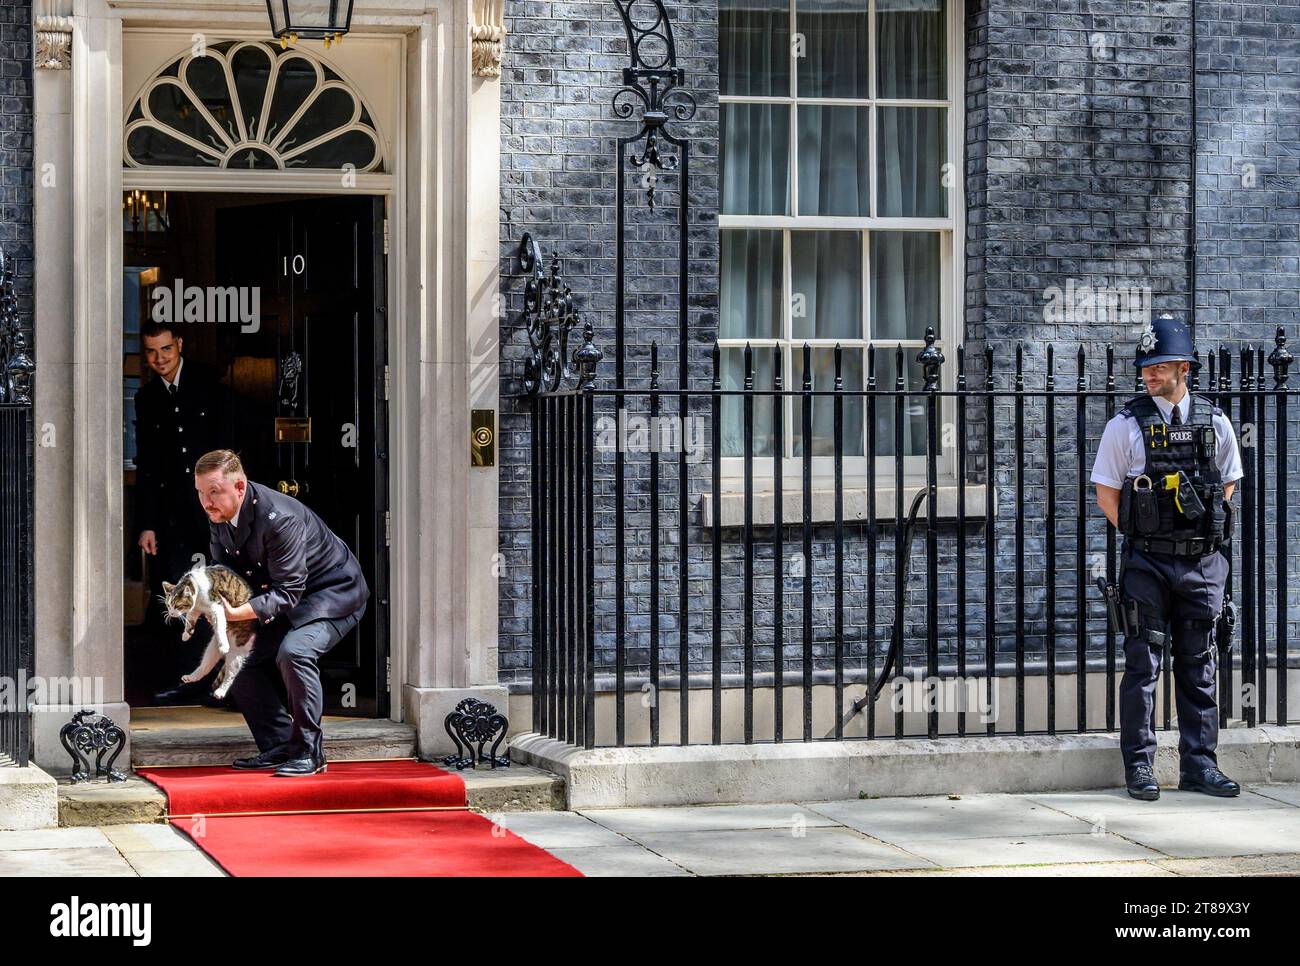 Larry il gatto - Capo Mouser all'Ufficio del Gabinetto dal 2011 - rimosso dal tappeto rosso di Downing Street poco prima dell'arrivo di Joe Biden Foto Stock